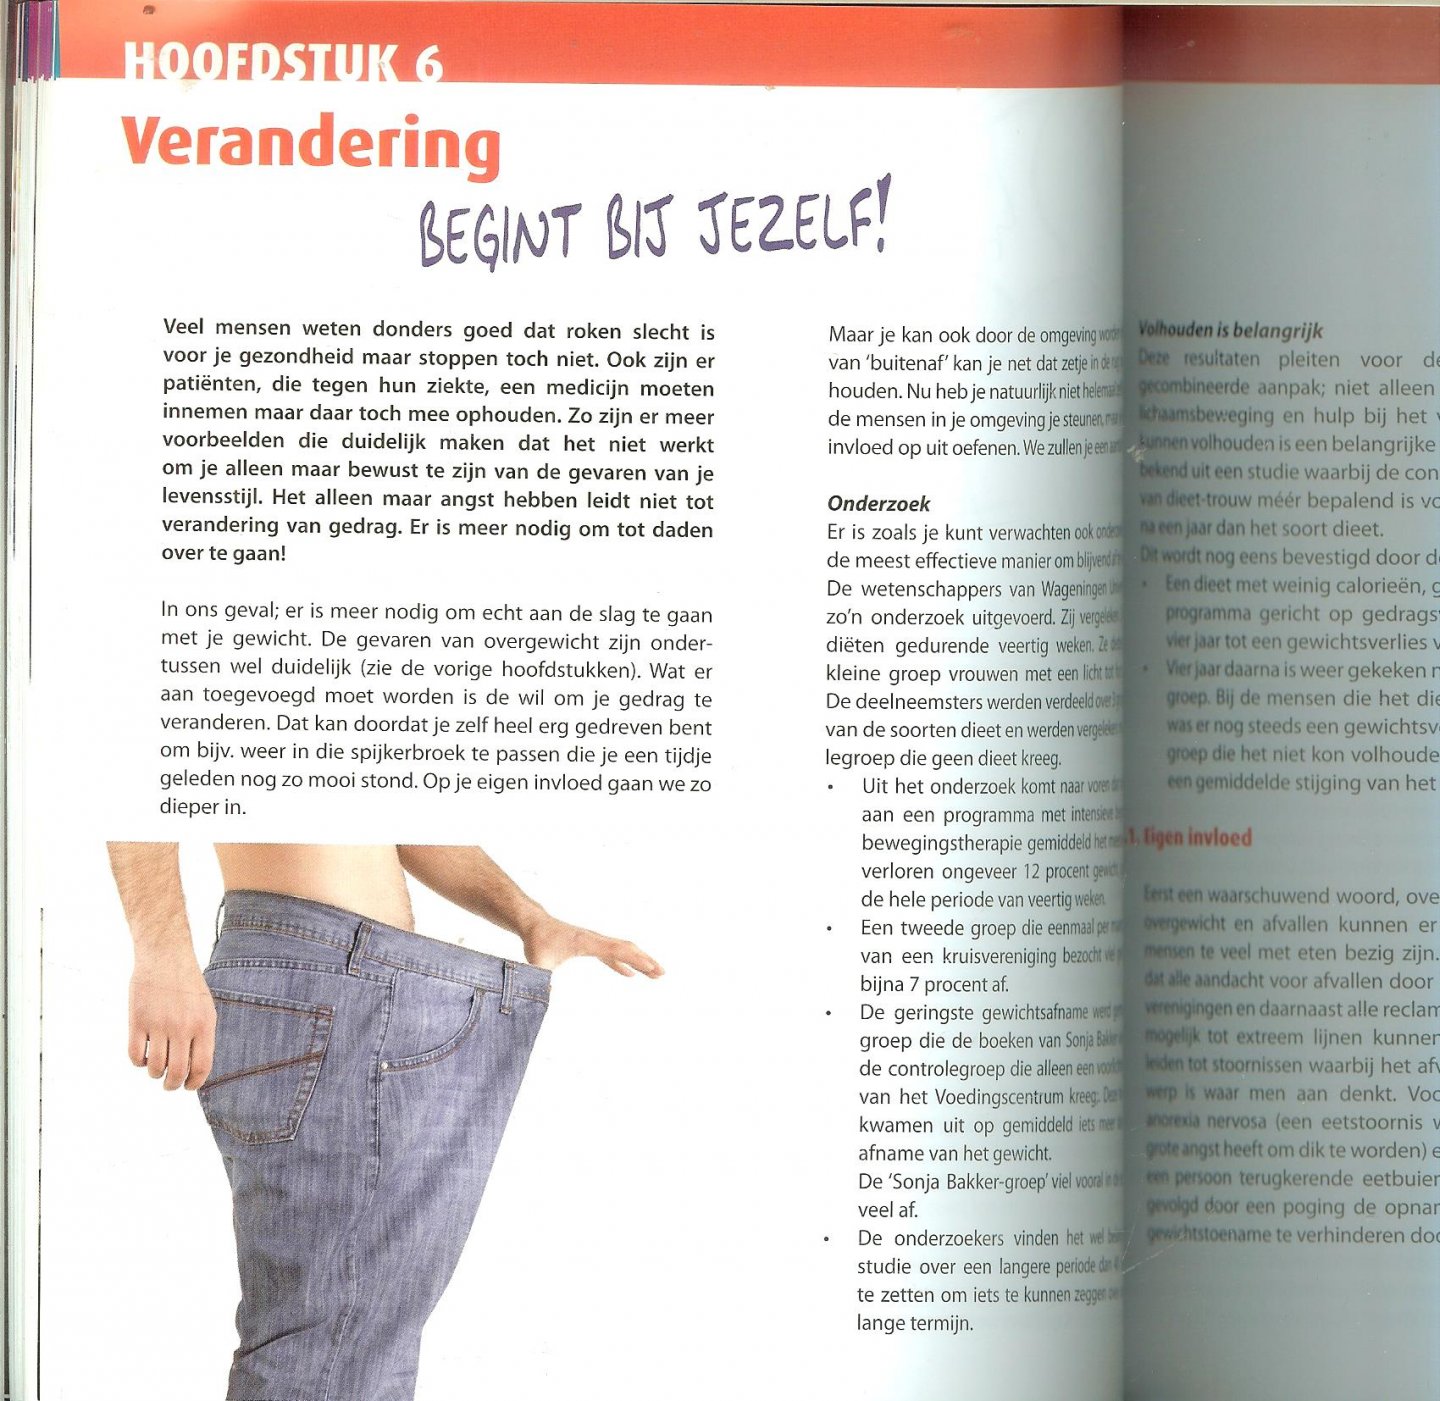 Geurkink Harry en Coen  van Paassen - Wetenschappelijke controle over je gewicht